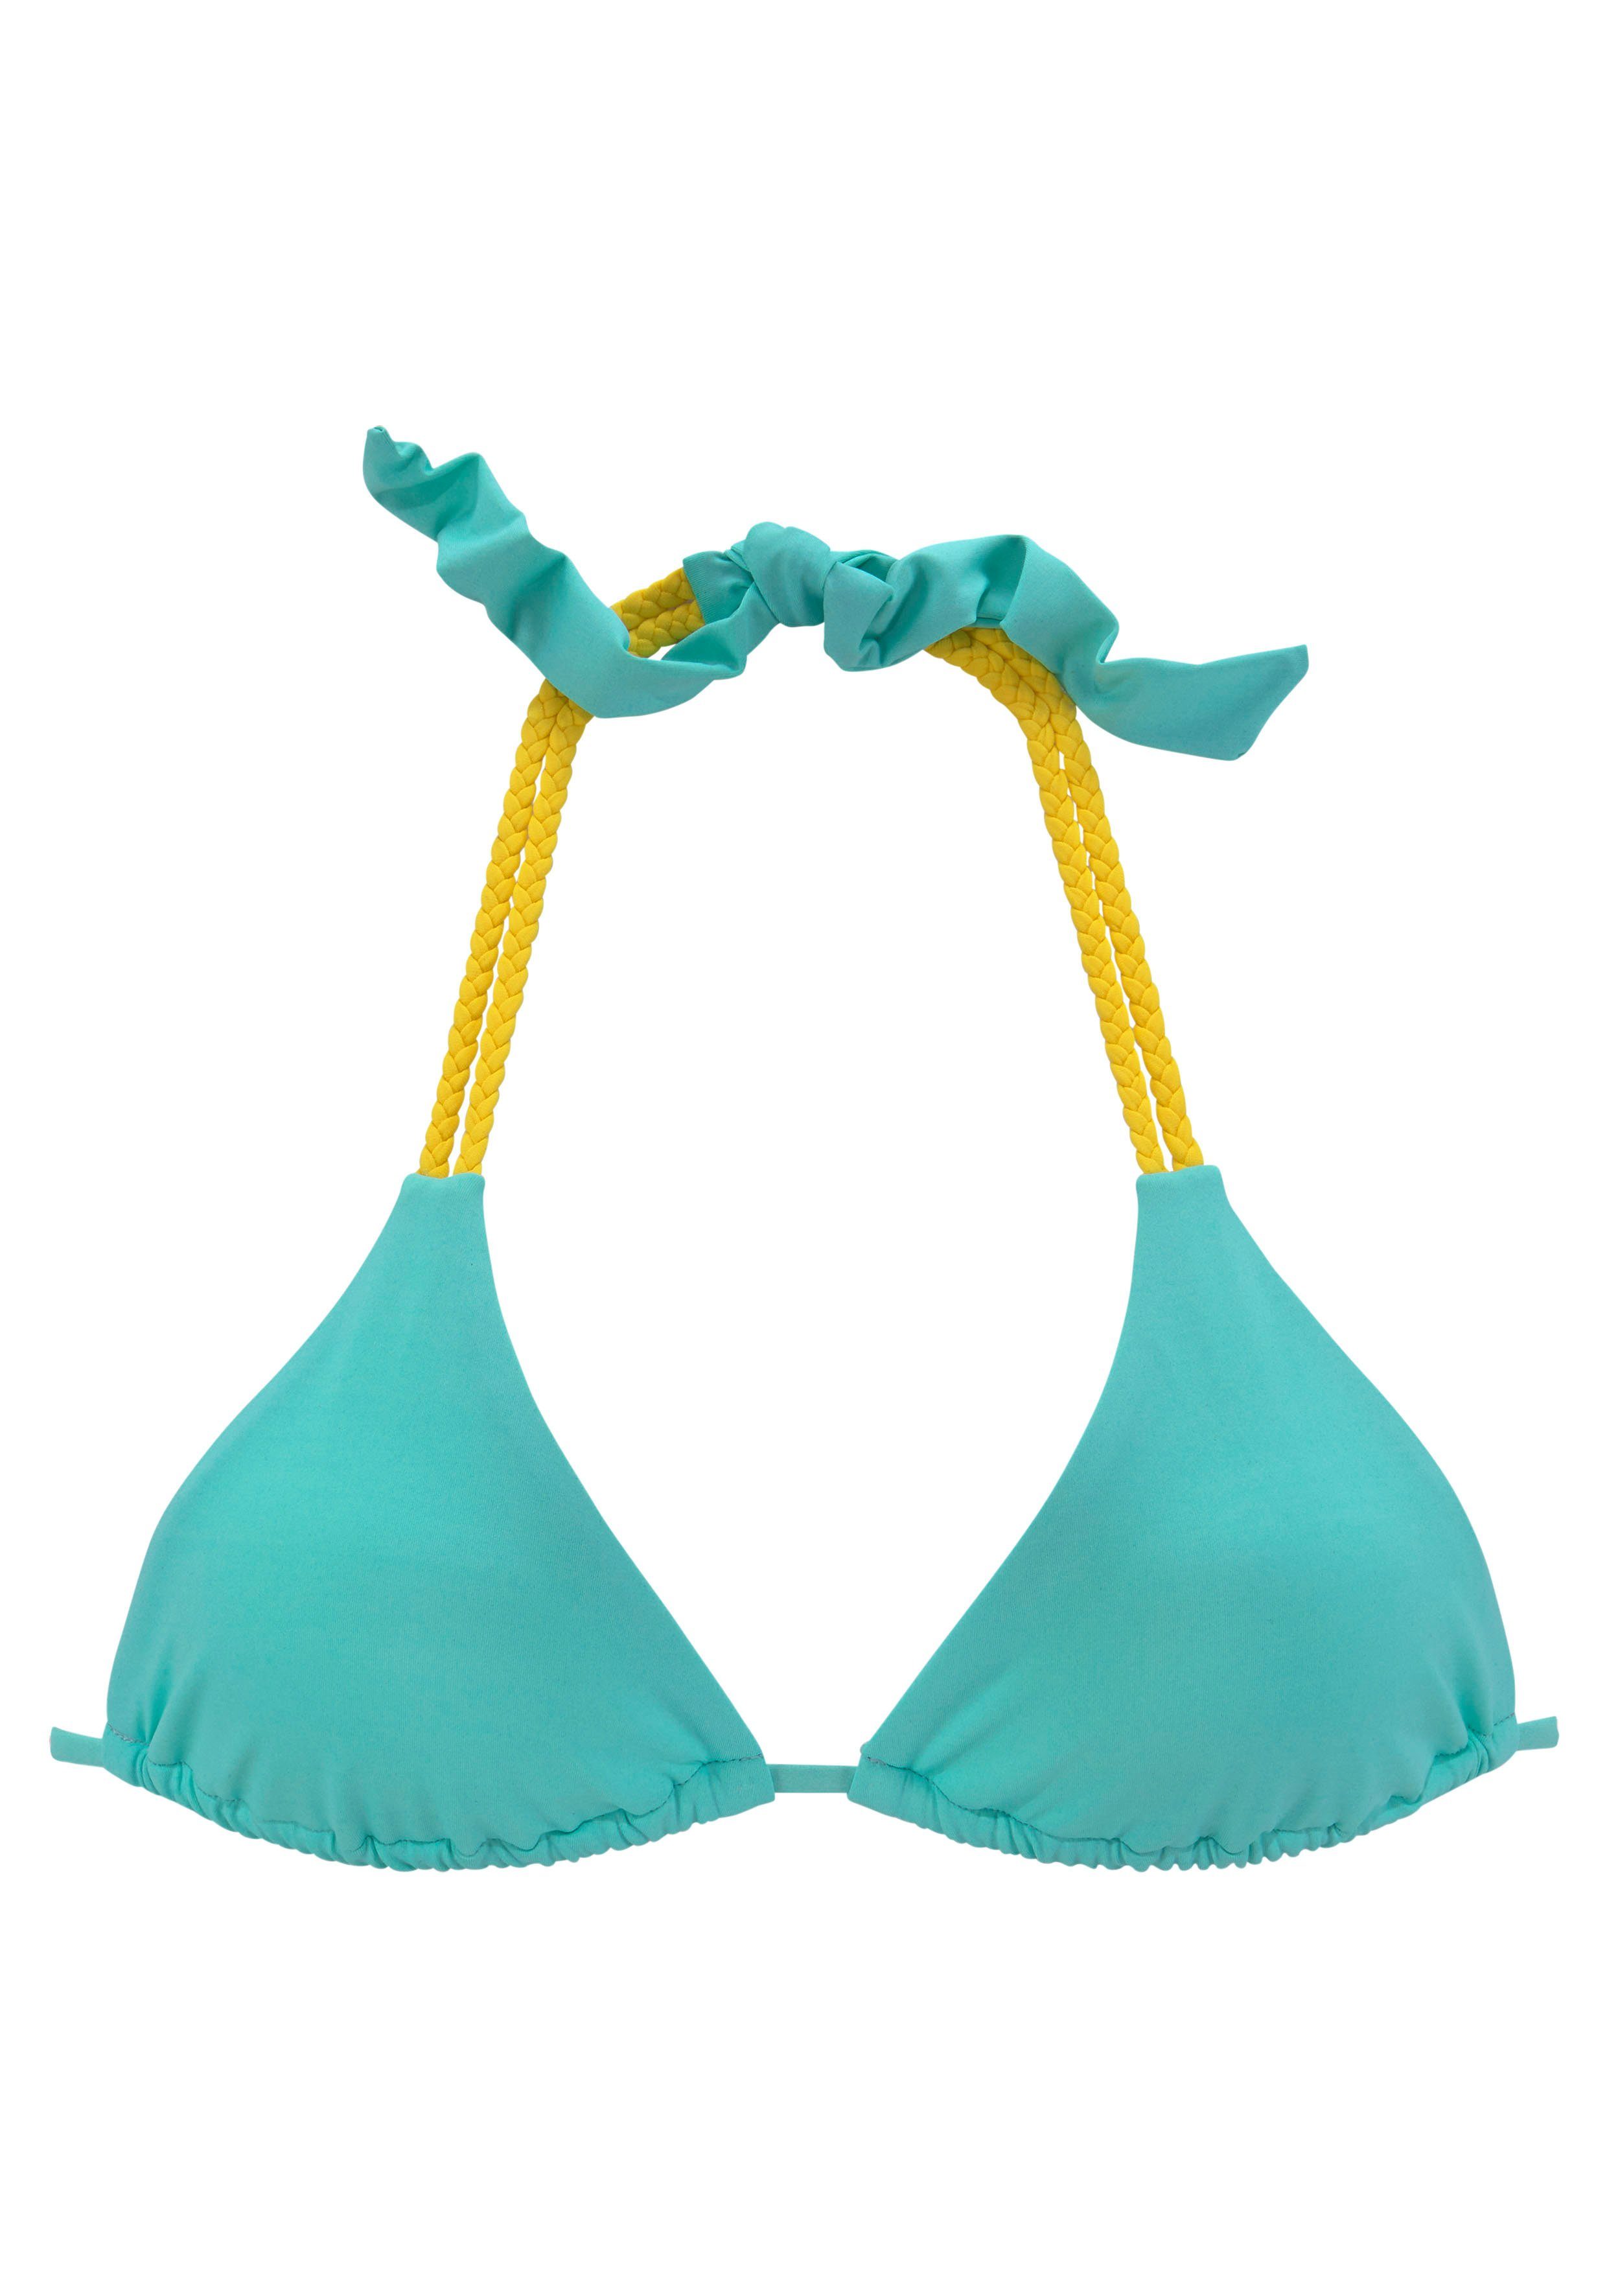 venice beach triangel-bikinitop anna met gevlochten details blauw